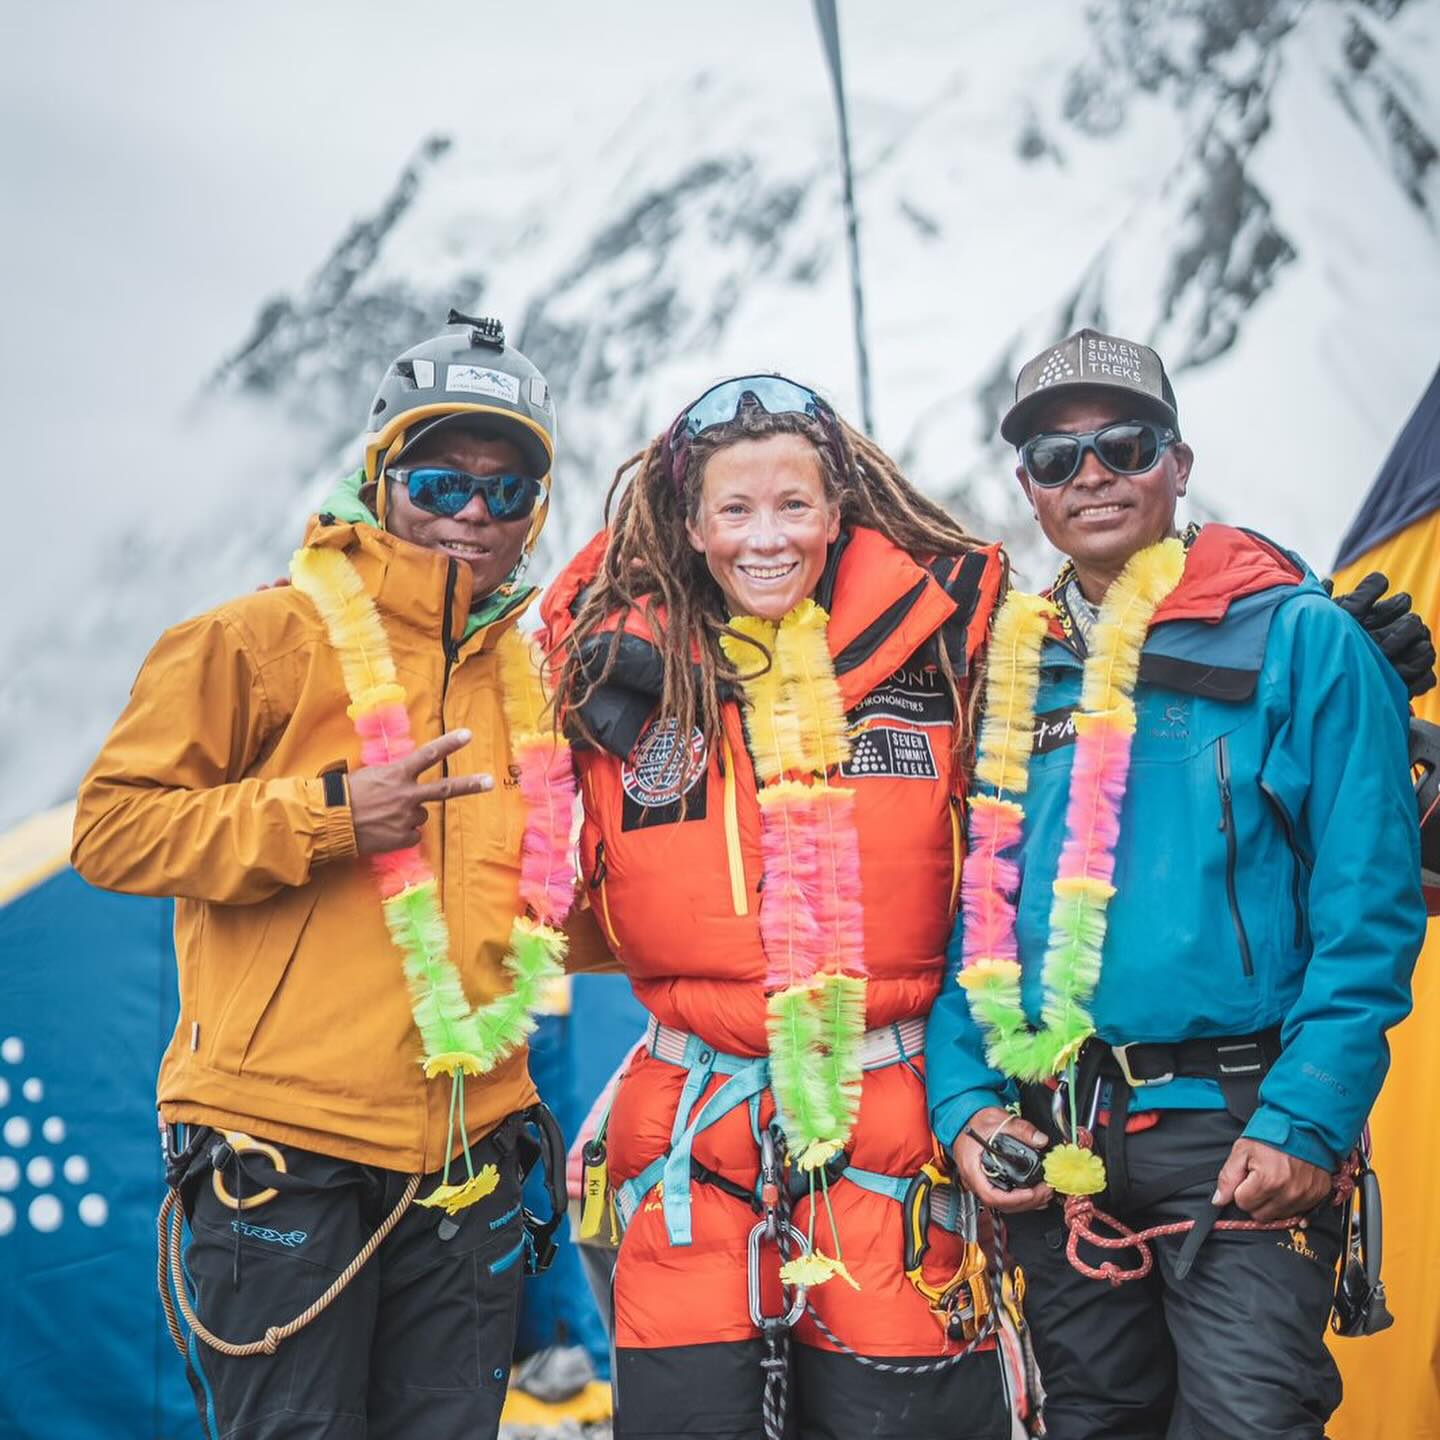 Tenjen Sherpa and Kristin Harila